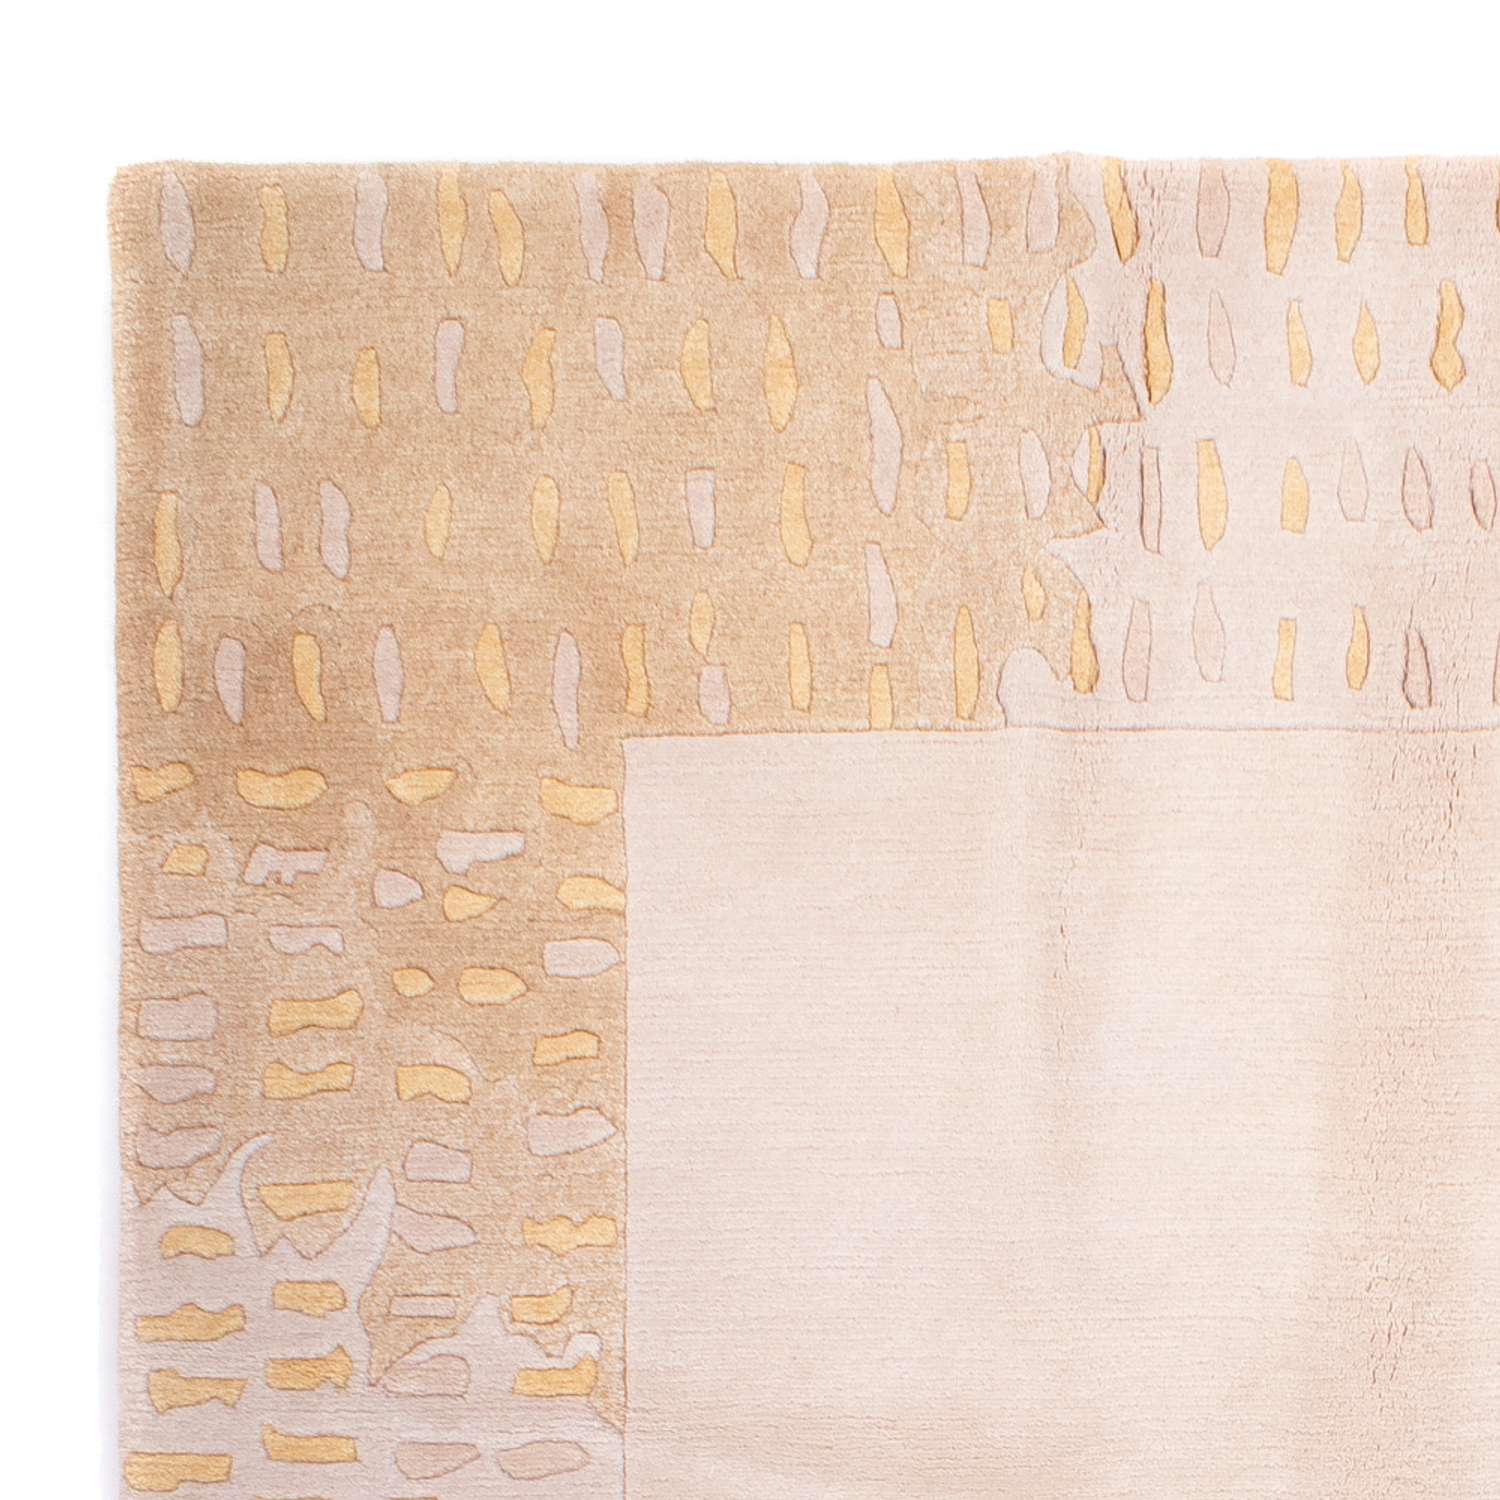 Nepal tapijt - Koninklijke - 240 x 170 cm - beige